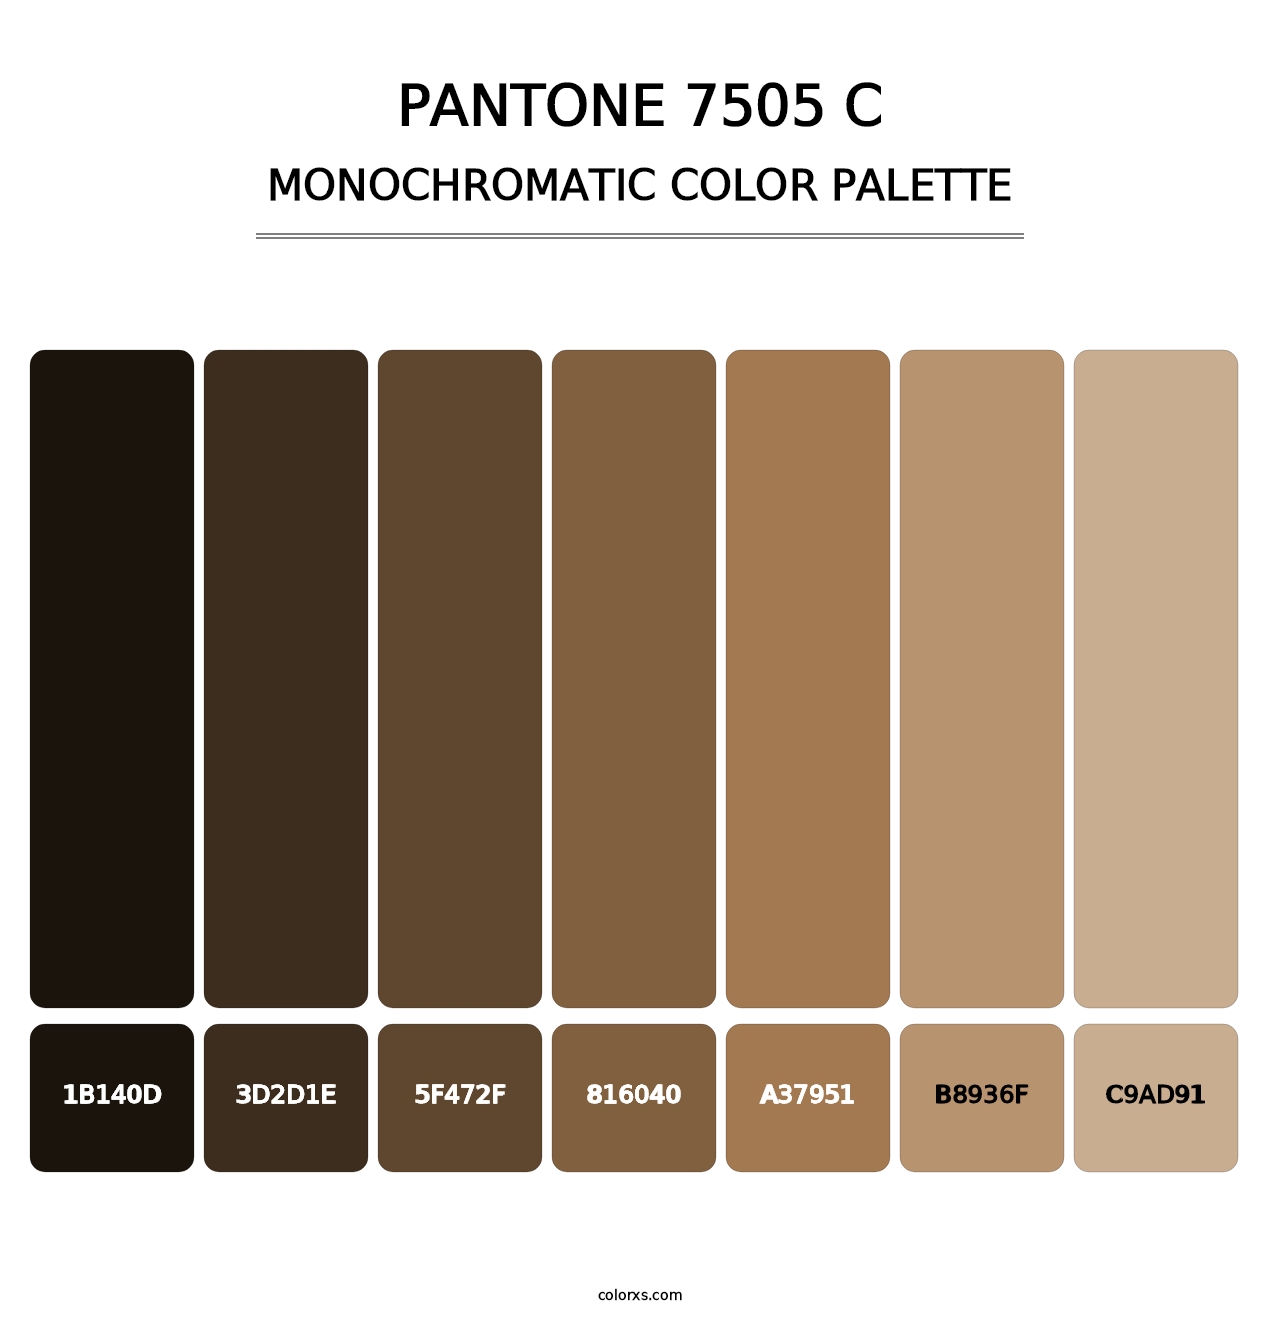 PANTONE 7505 C - Monochromatic Color Palette